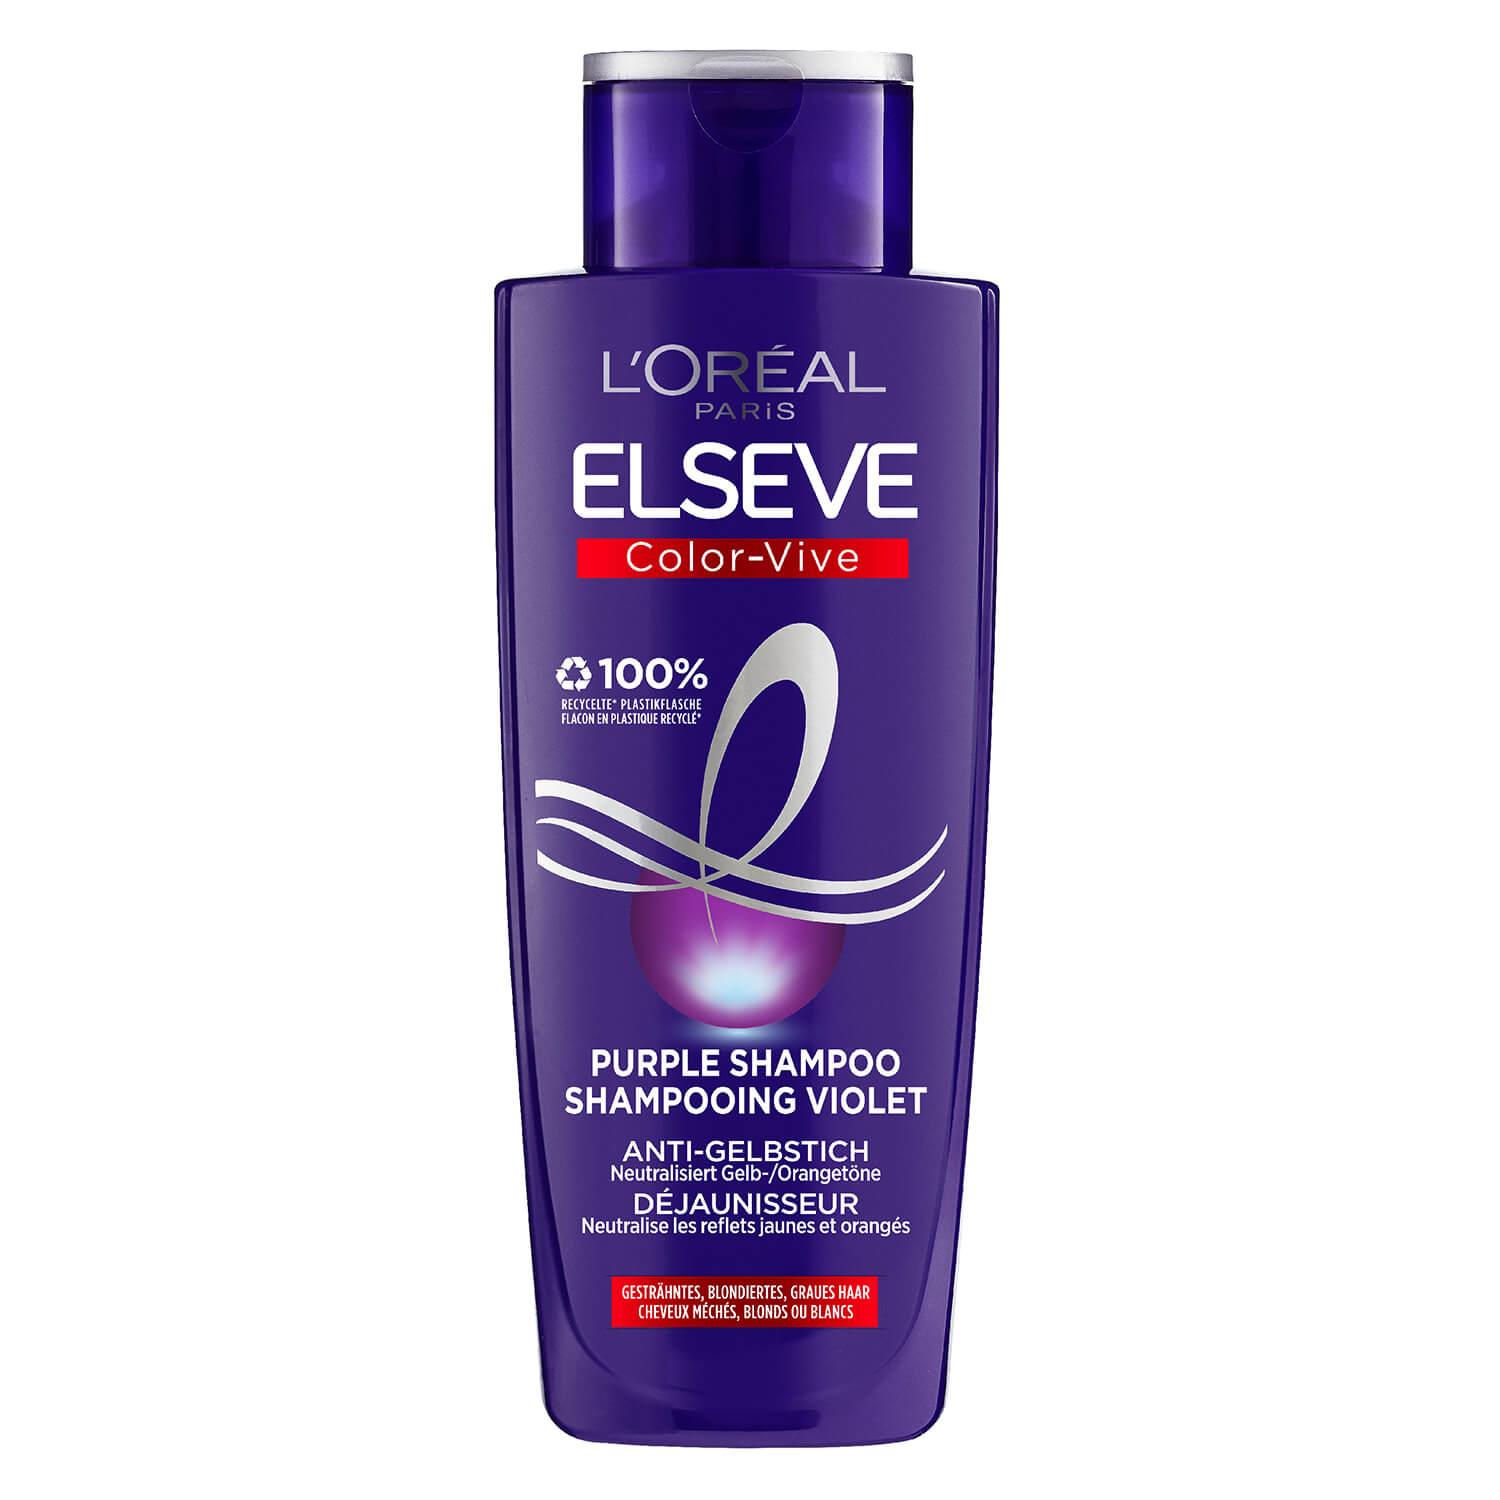 LOréal Elseve Haircare - Color-Vive Shampooing Violet Déjaunisseur